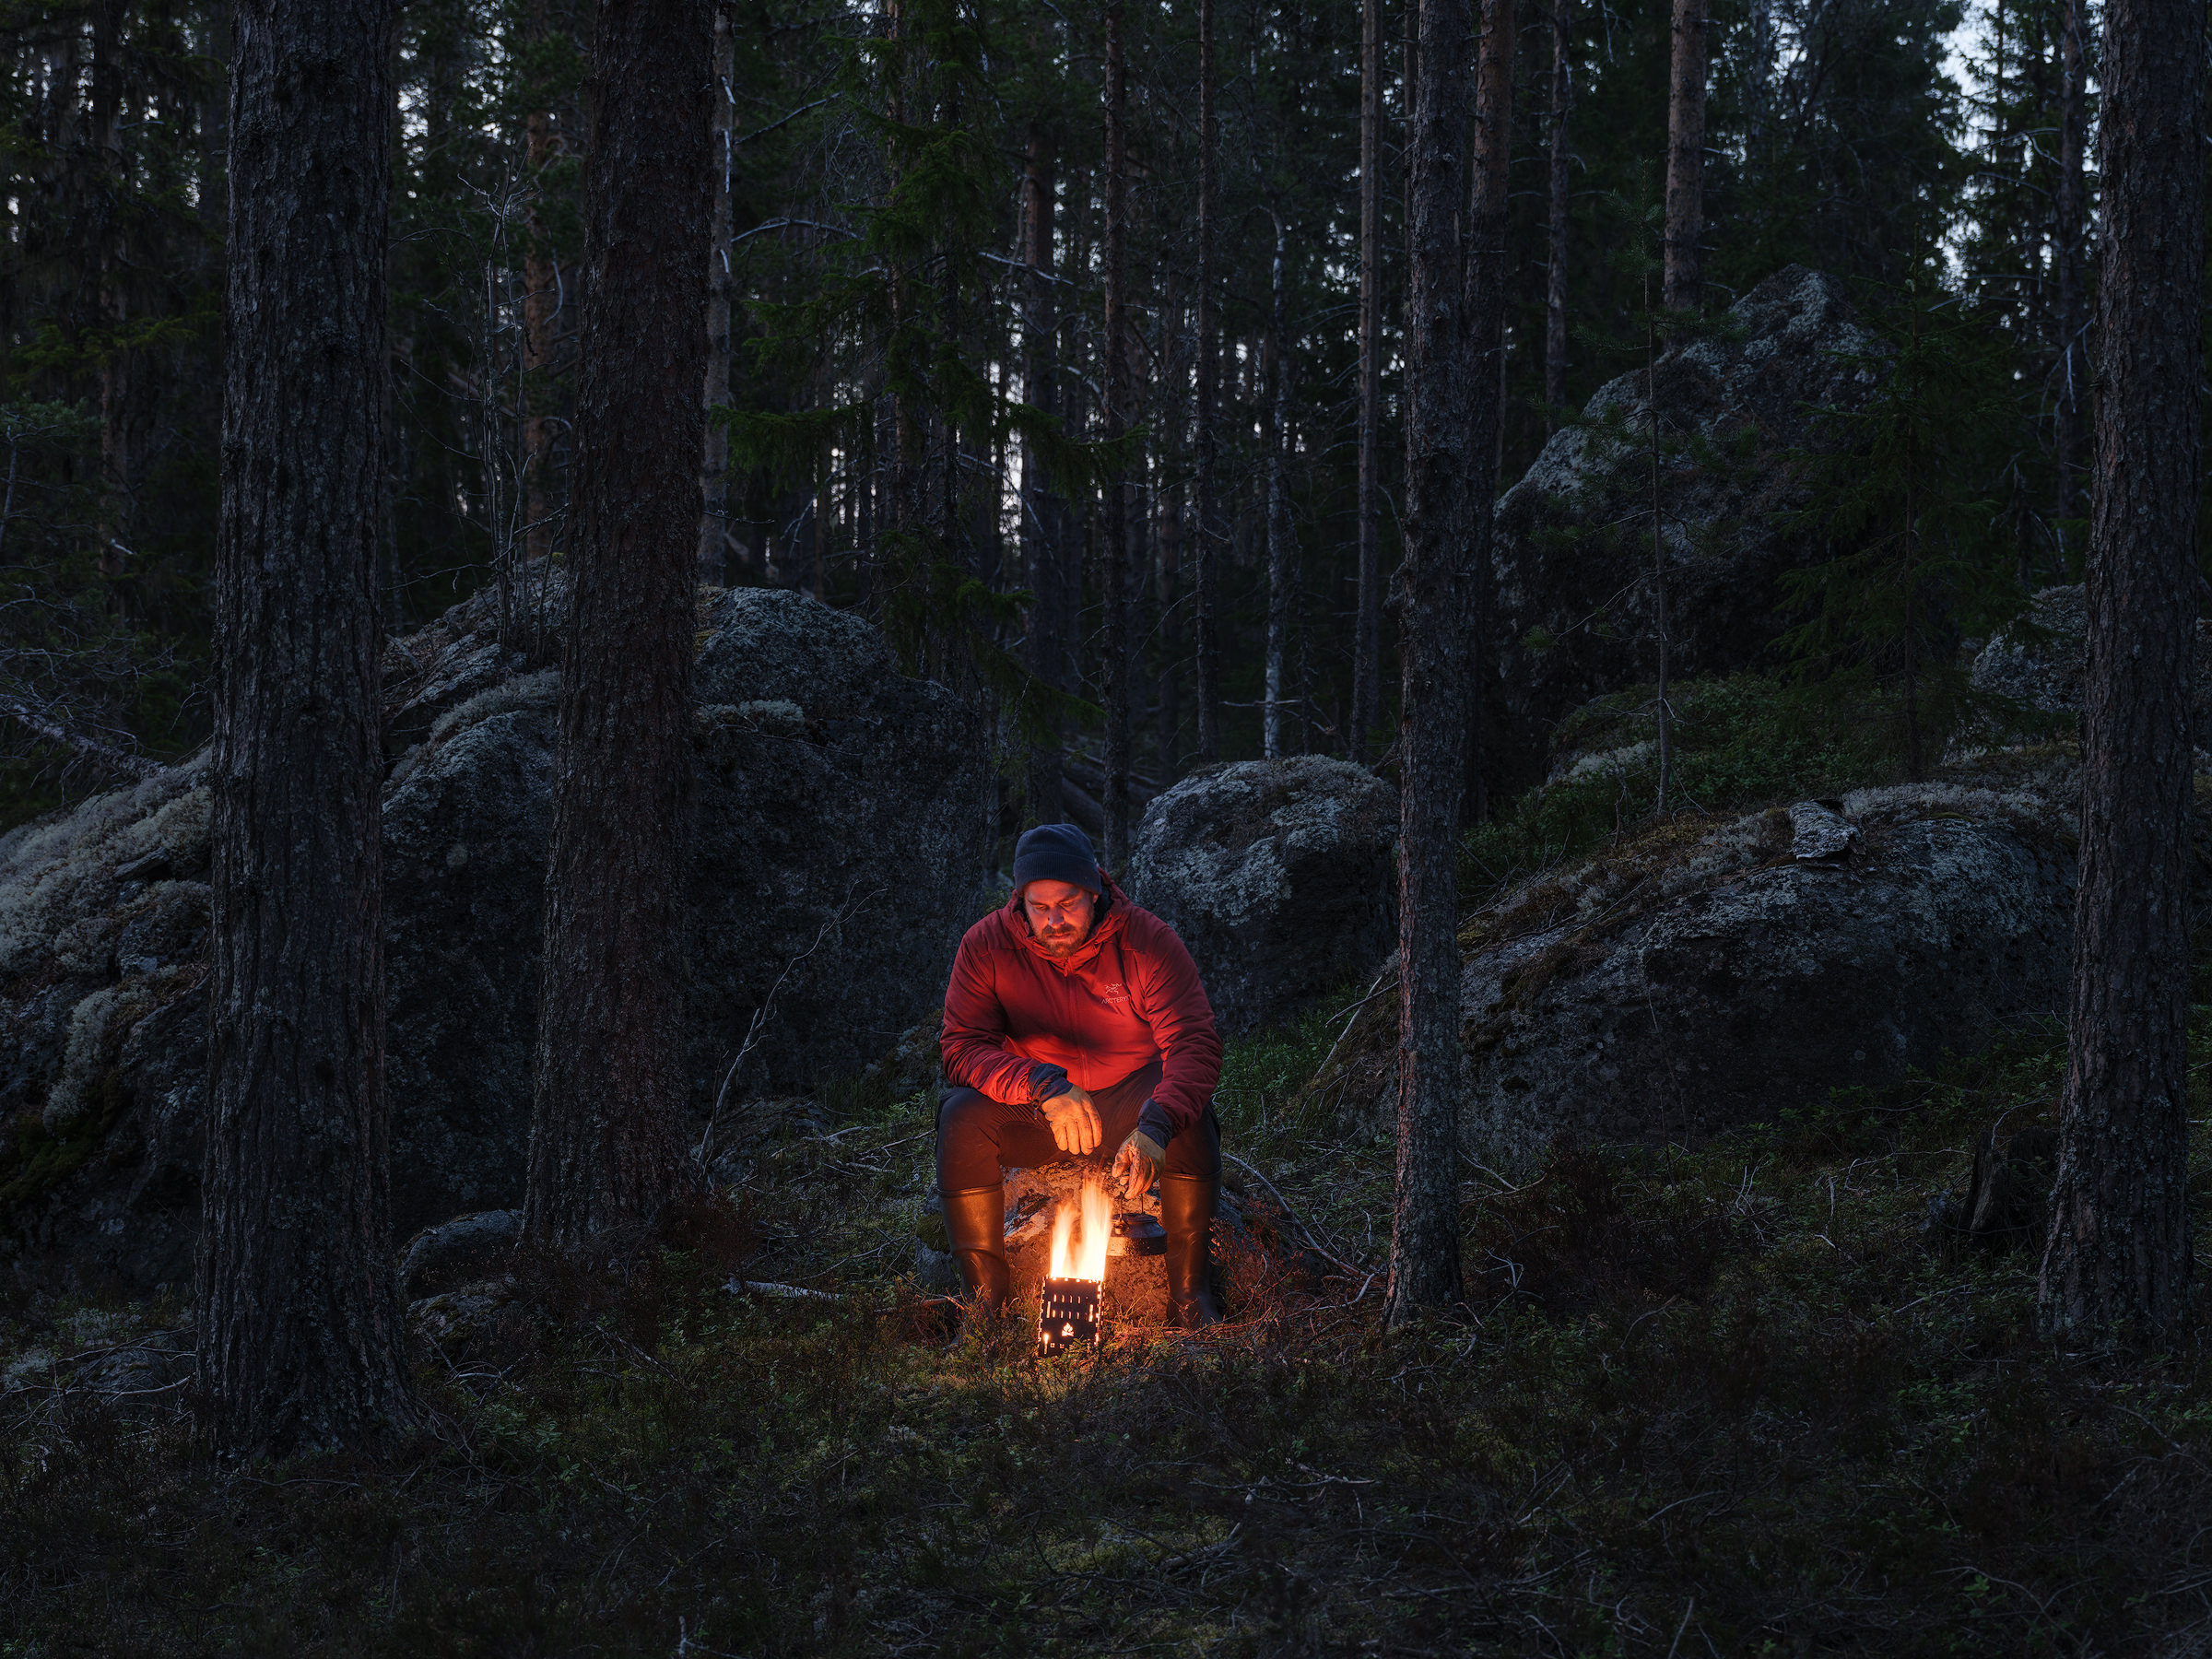 Magnus Lindbom is making a cup of coffee on his wood stove in Helvetesbrännans Nature Reserve, Jämtland.